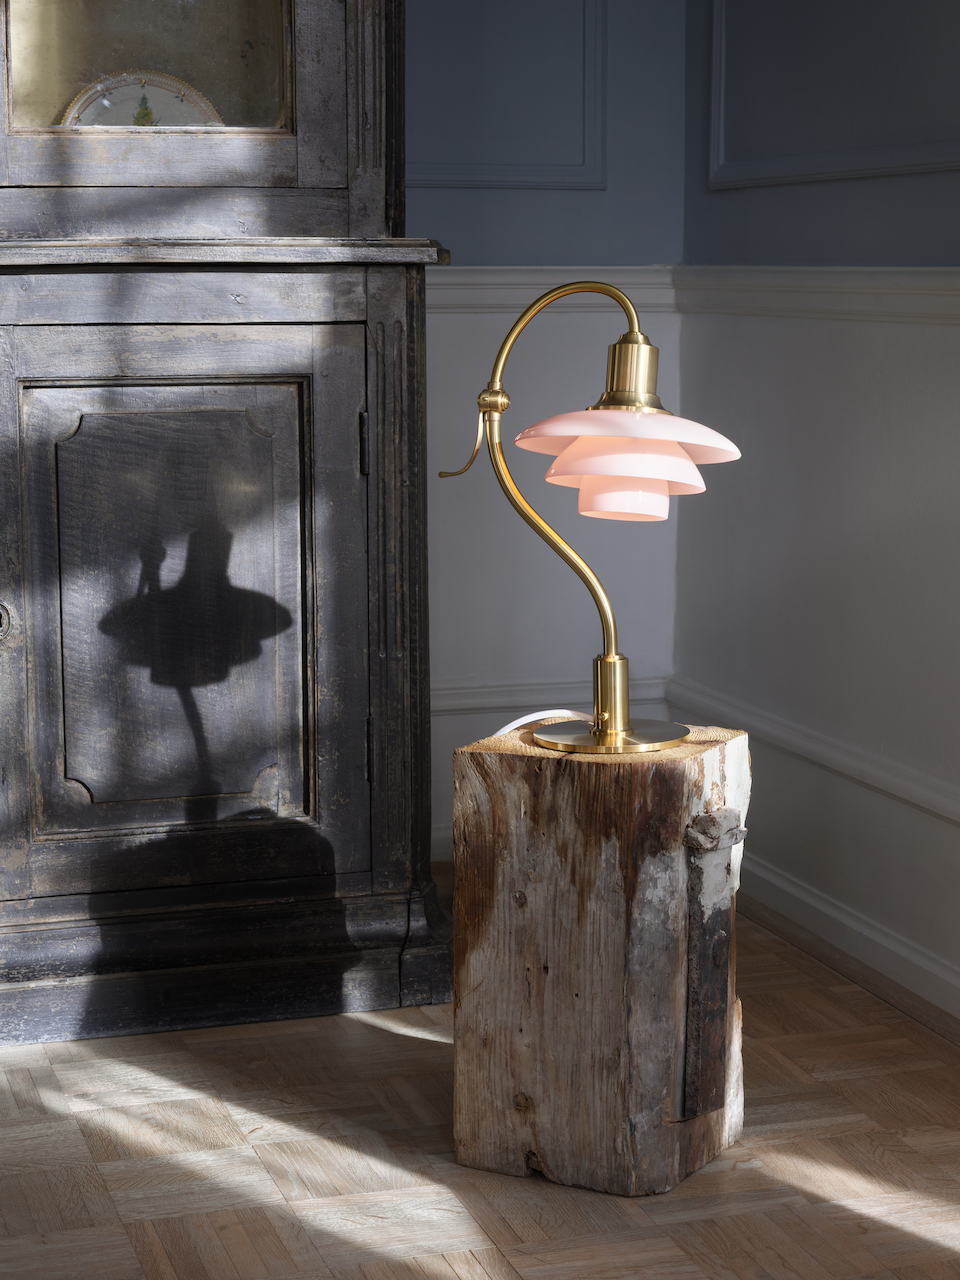 丹麥百年燈具品牌Louis Poulsen，旗下淡粉色的Pale Rose系列燈具